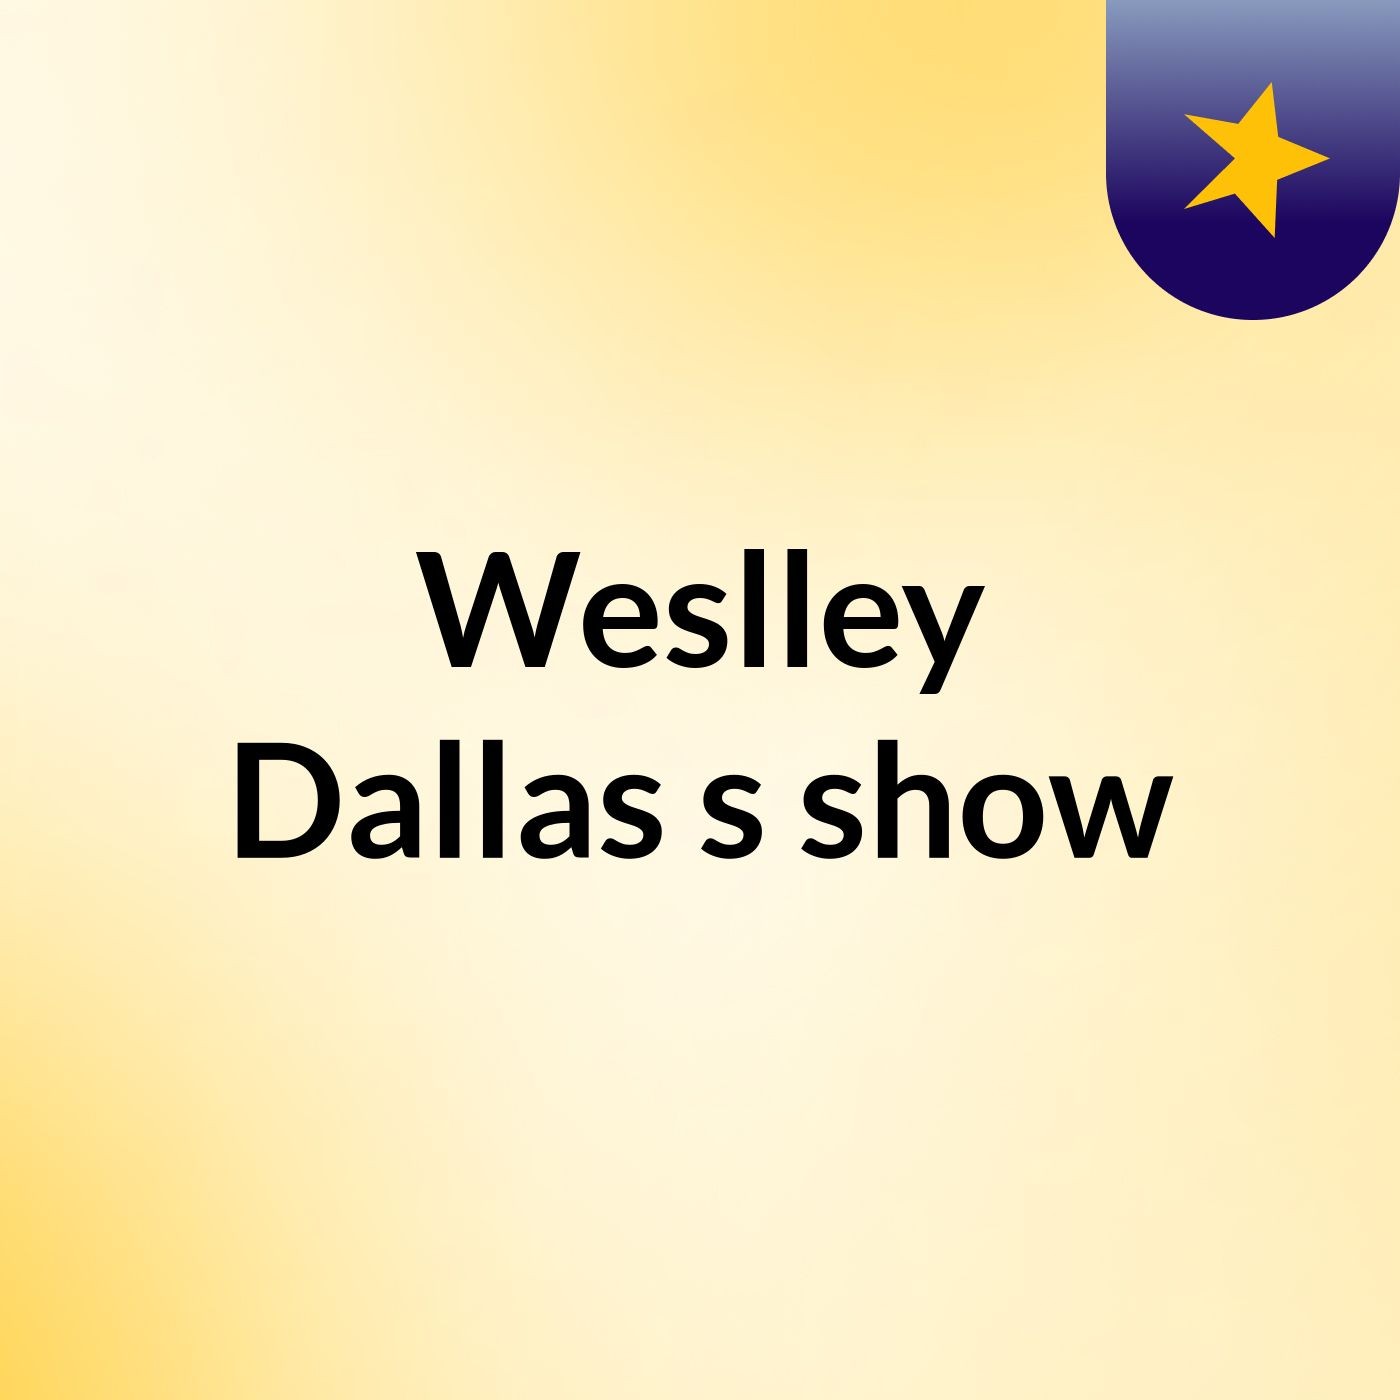 Weslley Dallas's show